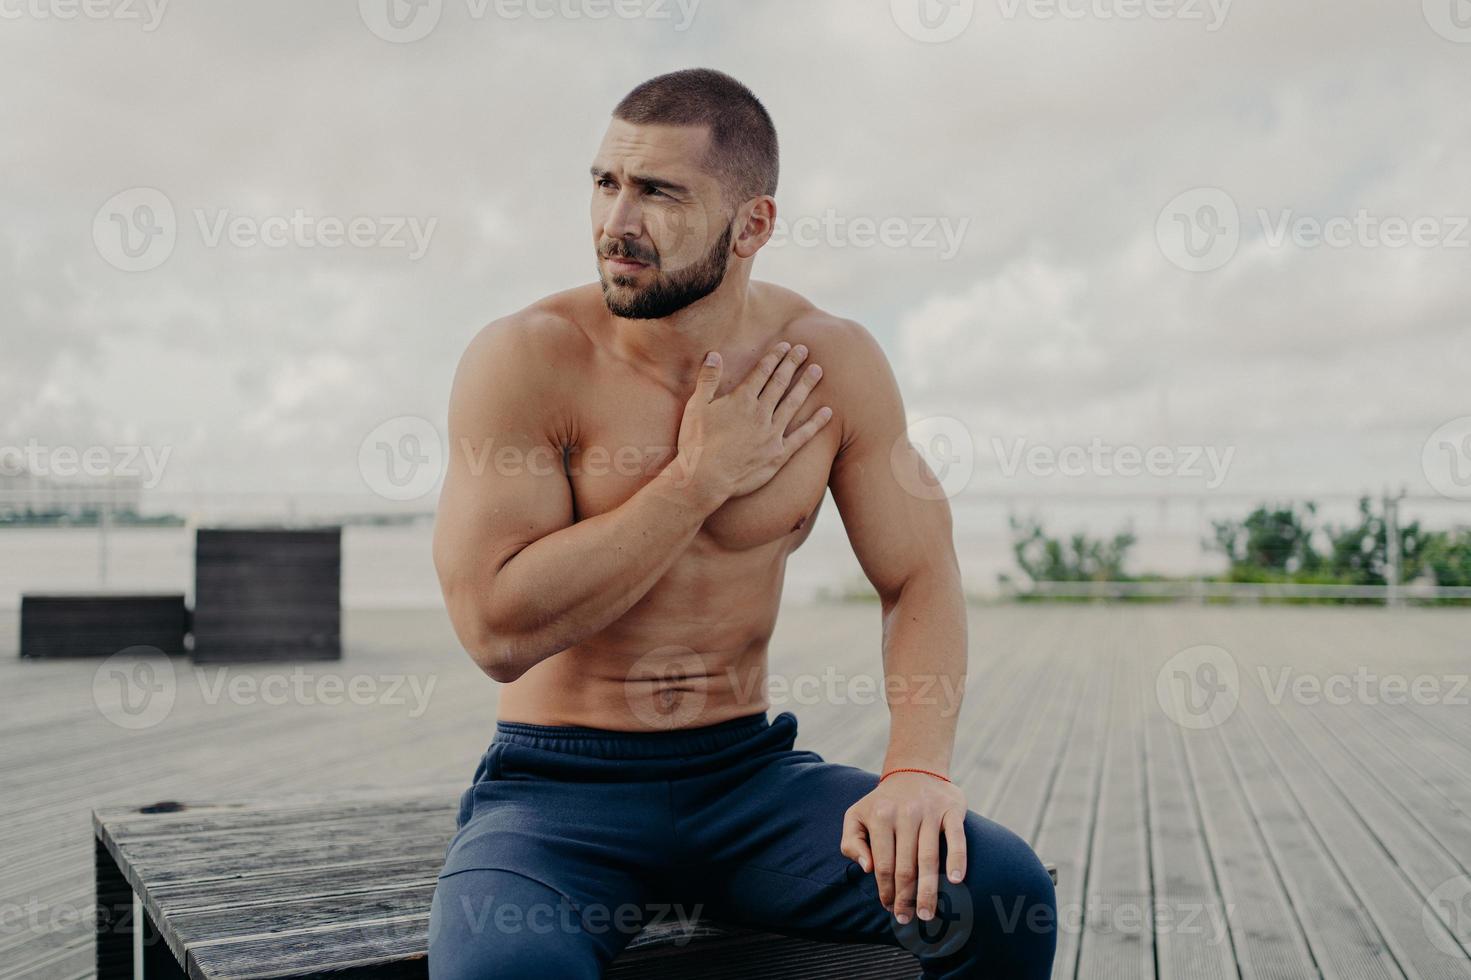 un homme barbu réfléchi se repose après un entraînement cardio intensif, garde la main sur la poitrine et manque de respiration, s'assoit à l'extérieur, concentré de côté, pose topless. sport et mode de vie sain photo